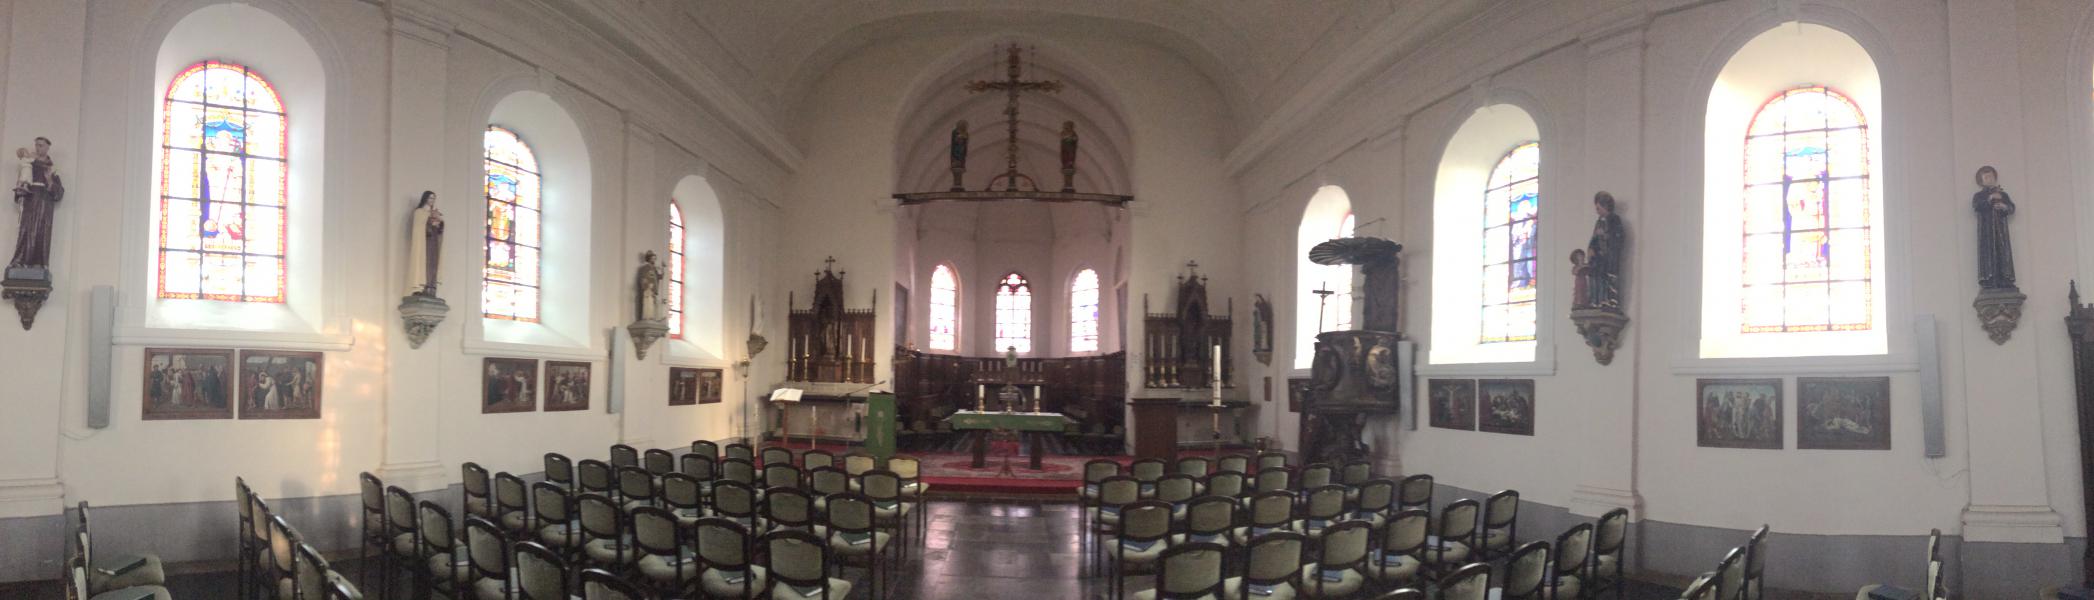 Panorama aan binnenzijde van de kerk 